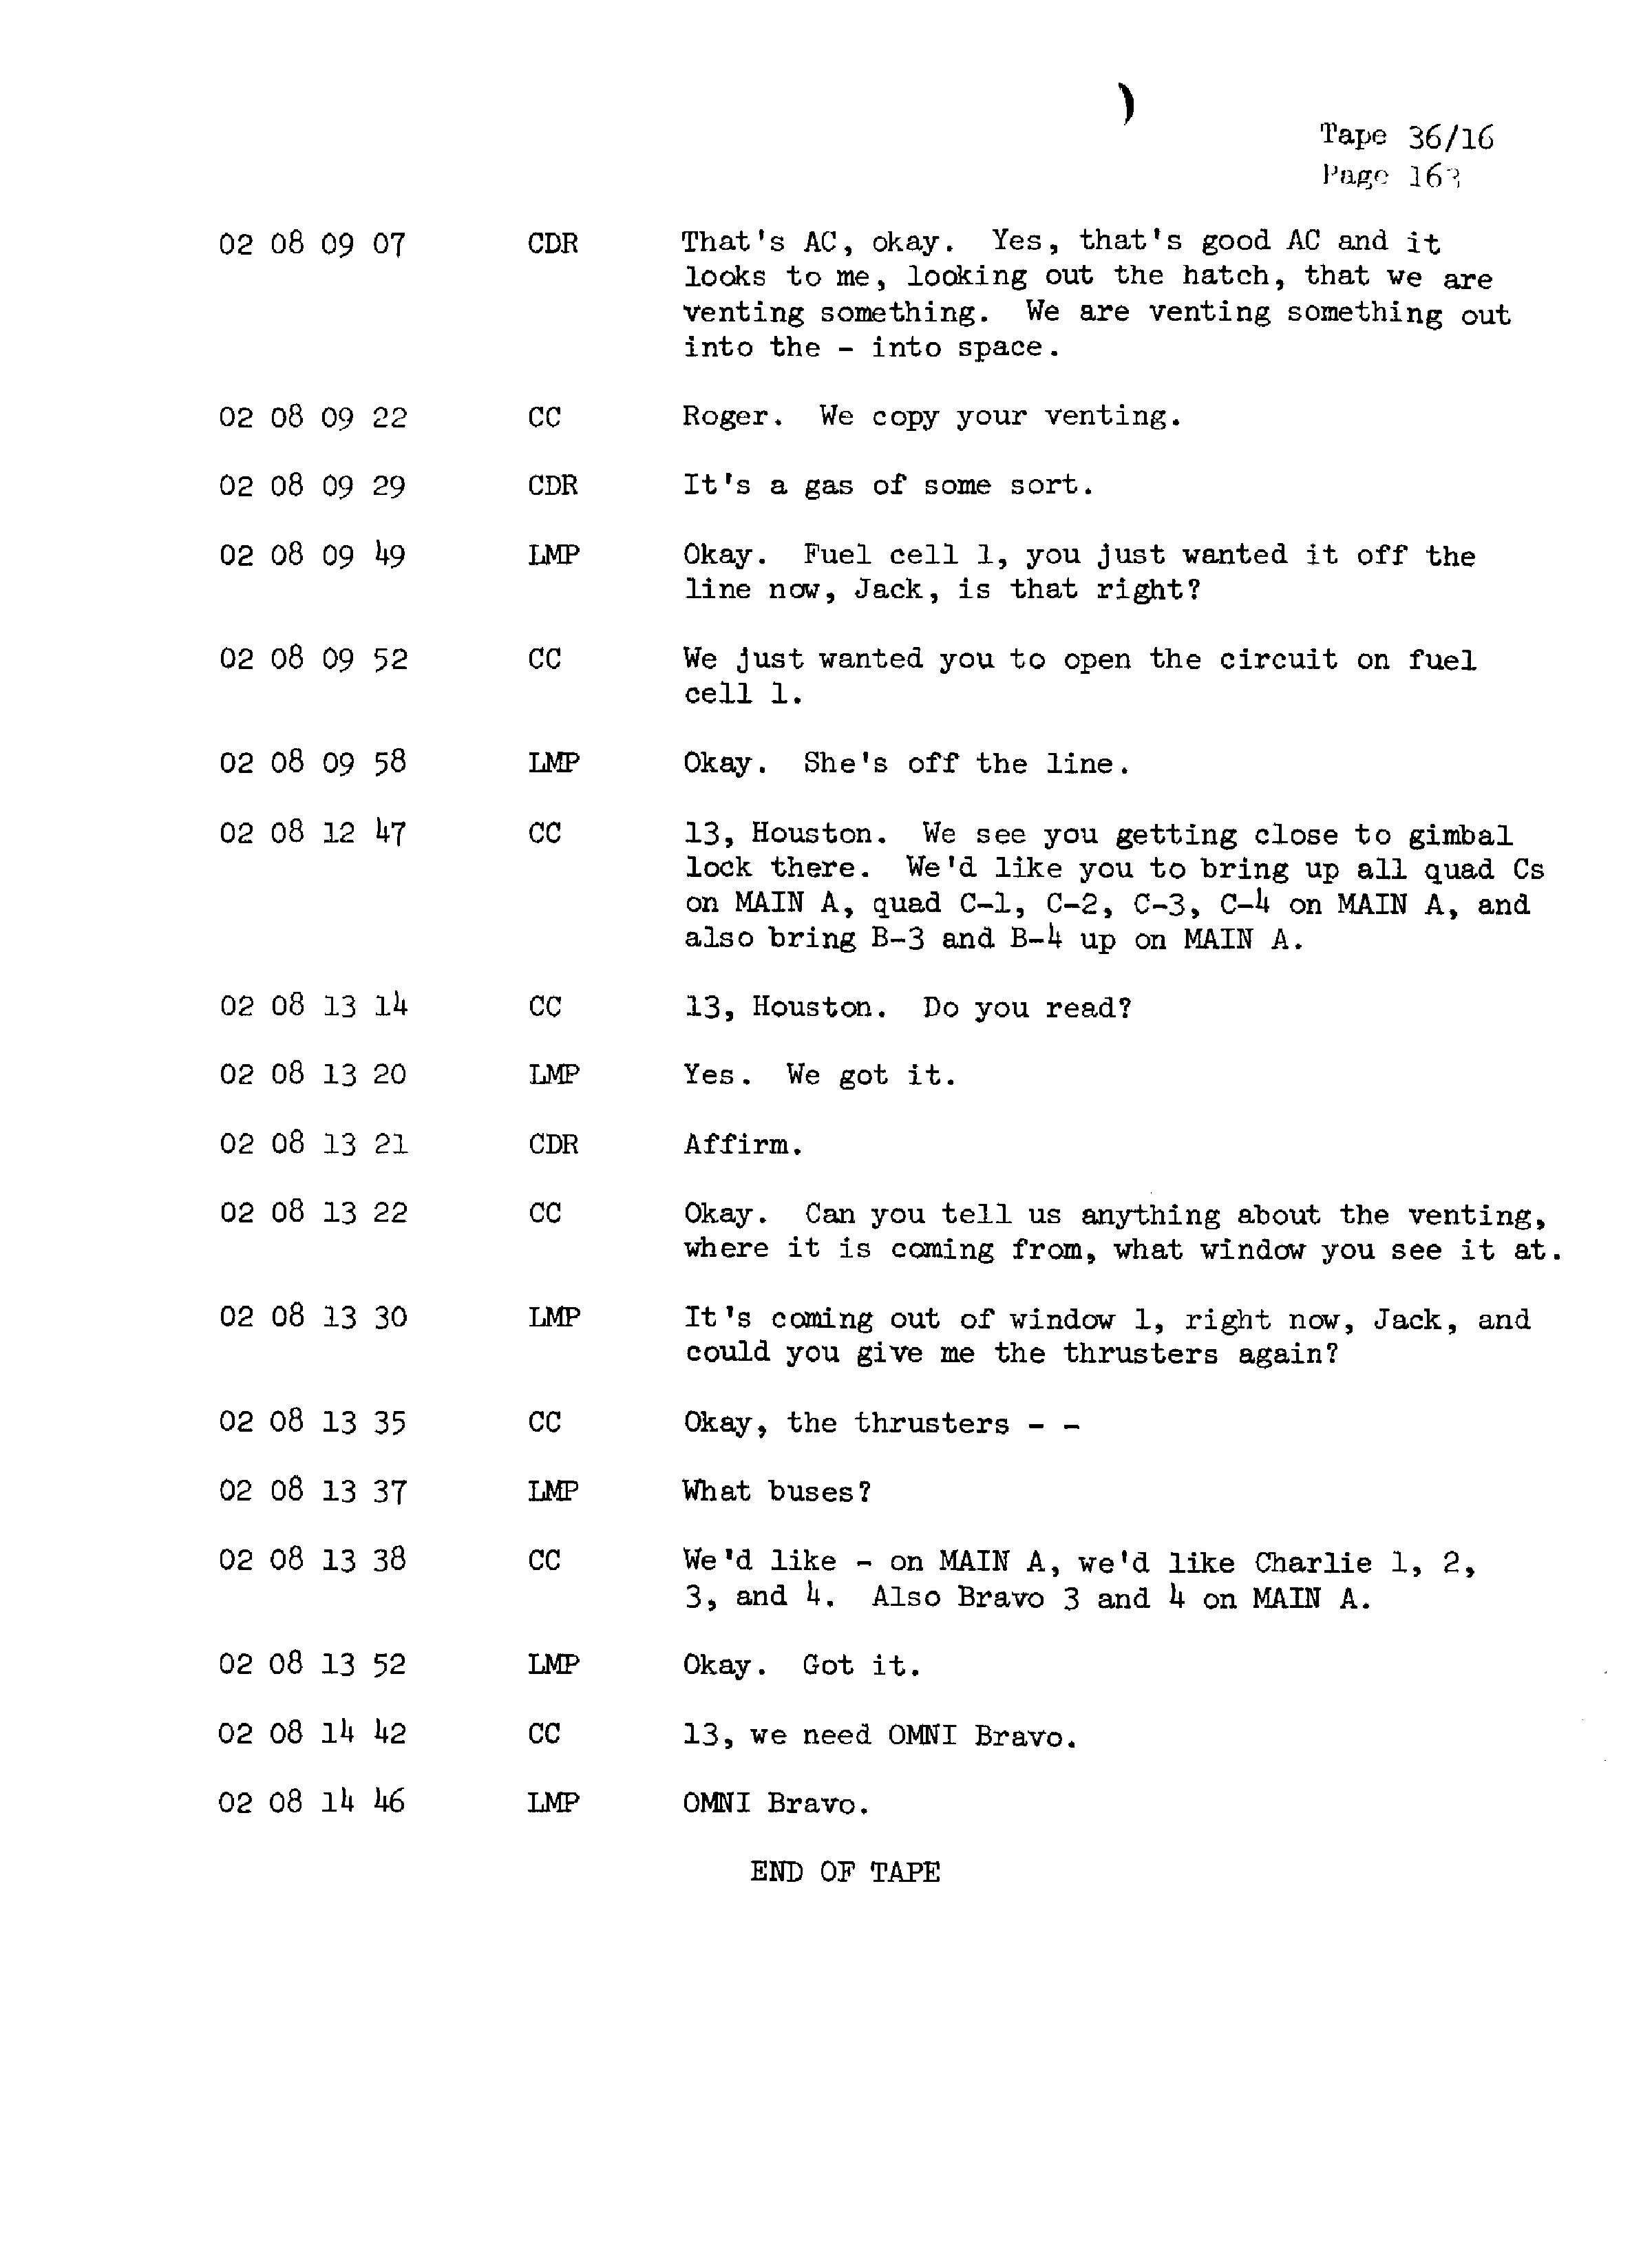 Page 170 of Apollo 13’s original transcript